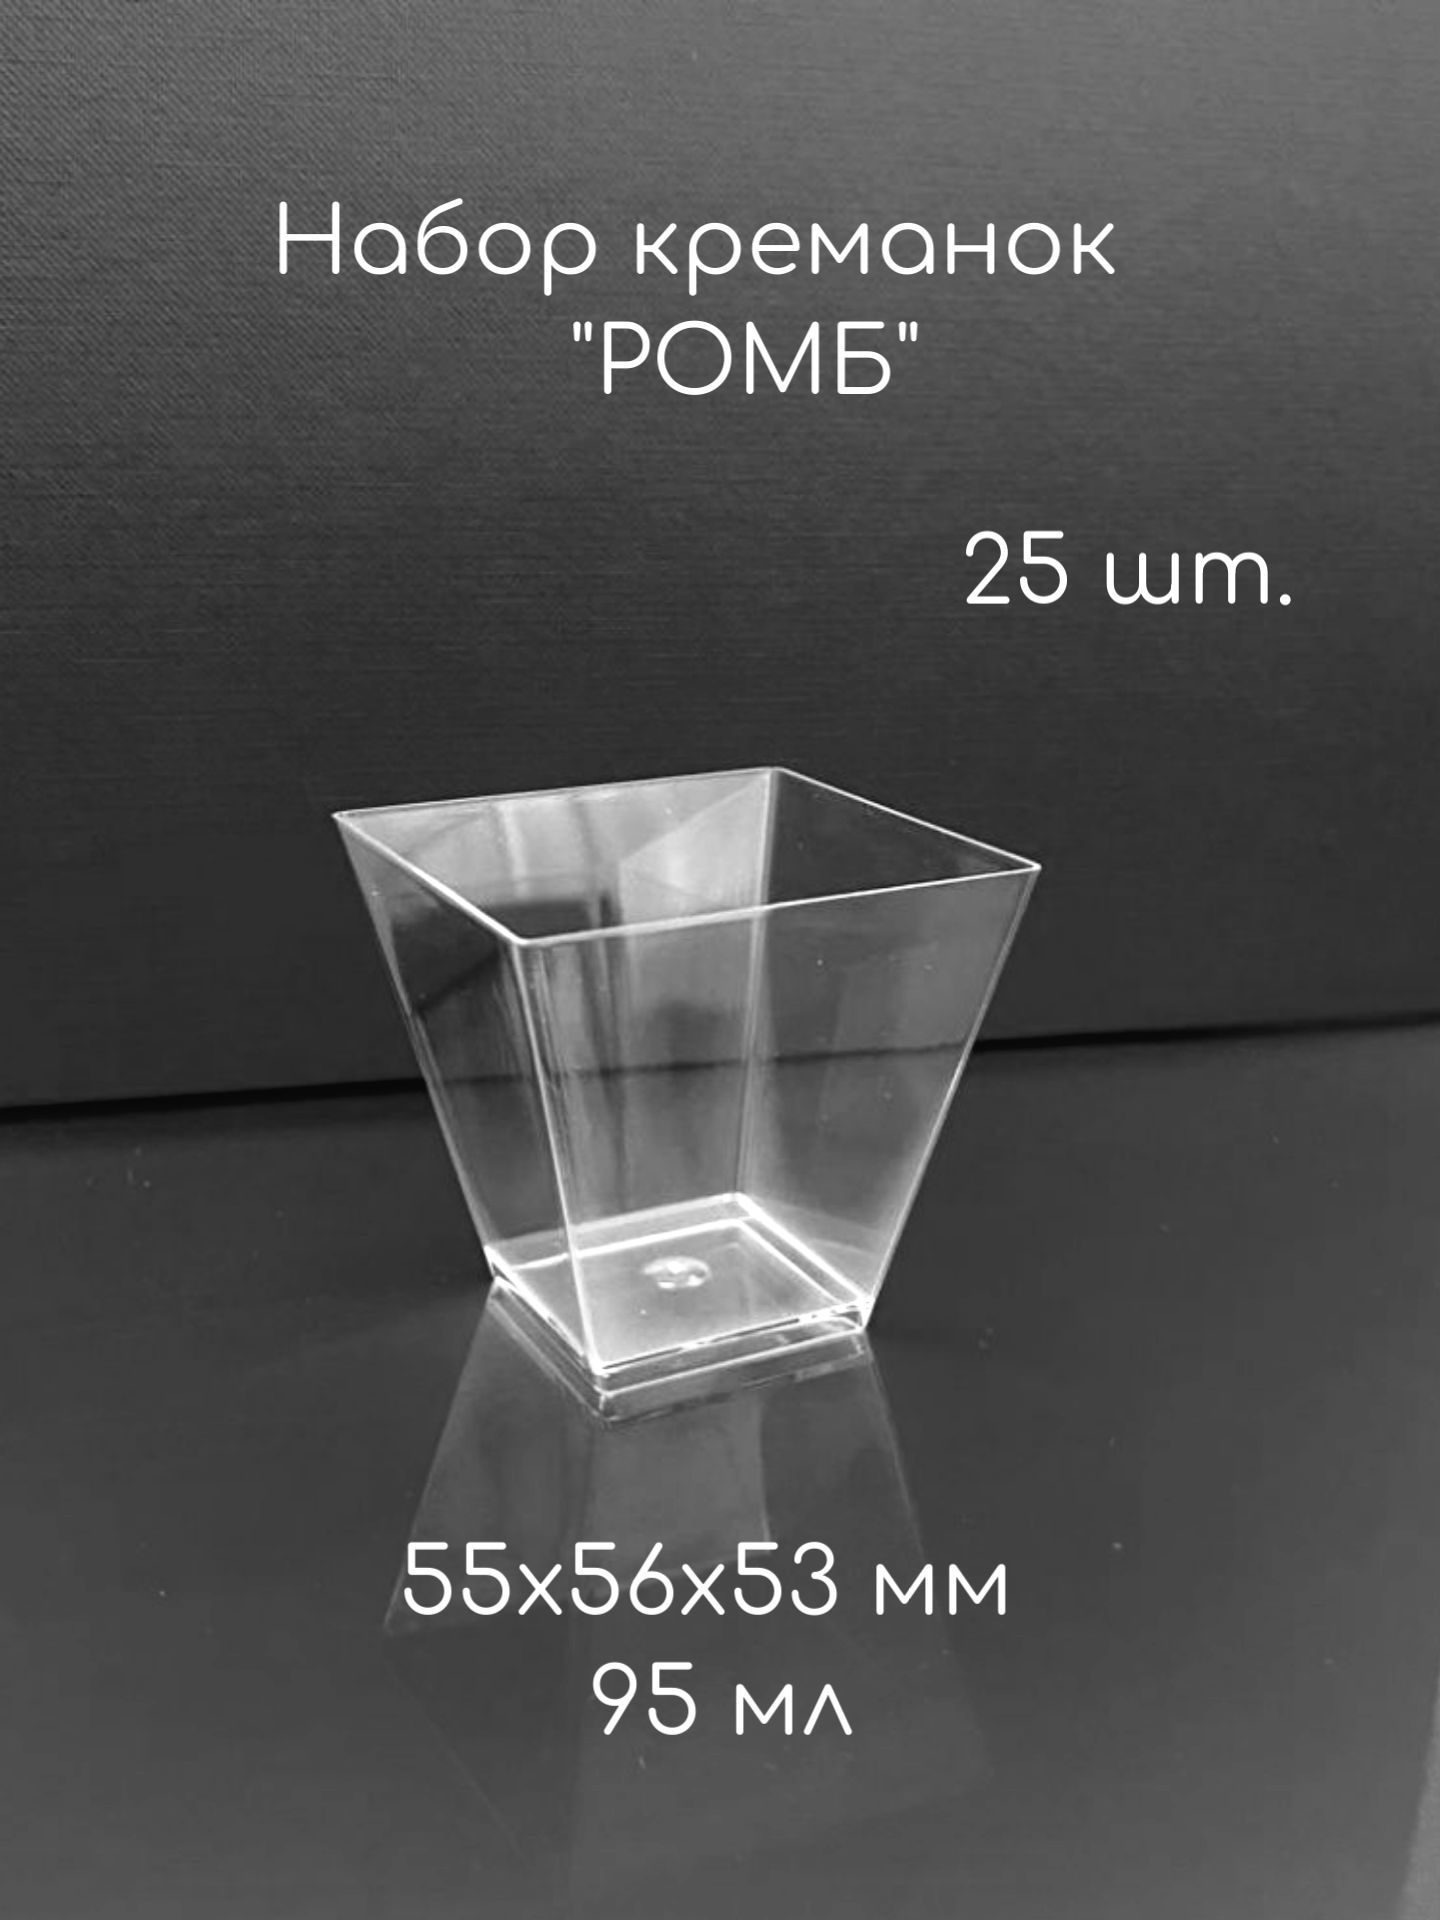 Креманка"Ромб",95мл,формадляфуршетаодноразовая,25шт.,размер55х56х53мм,полистироллитьевой(PS),прозрачныйпластик